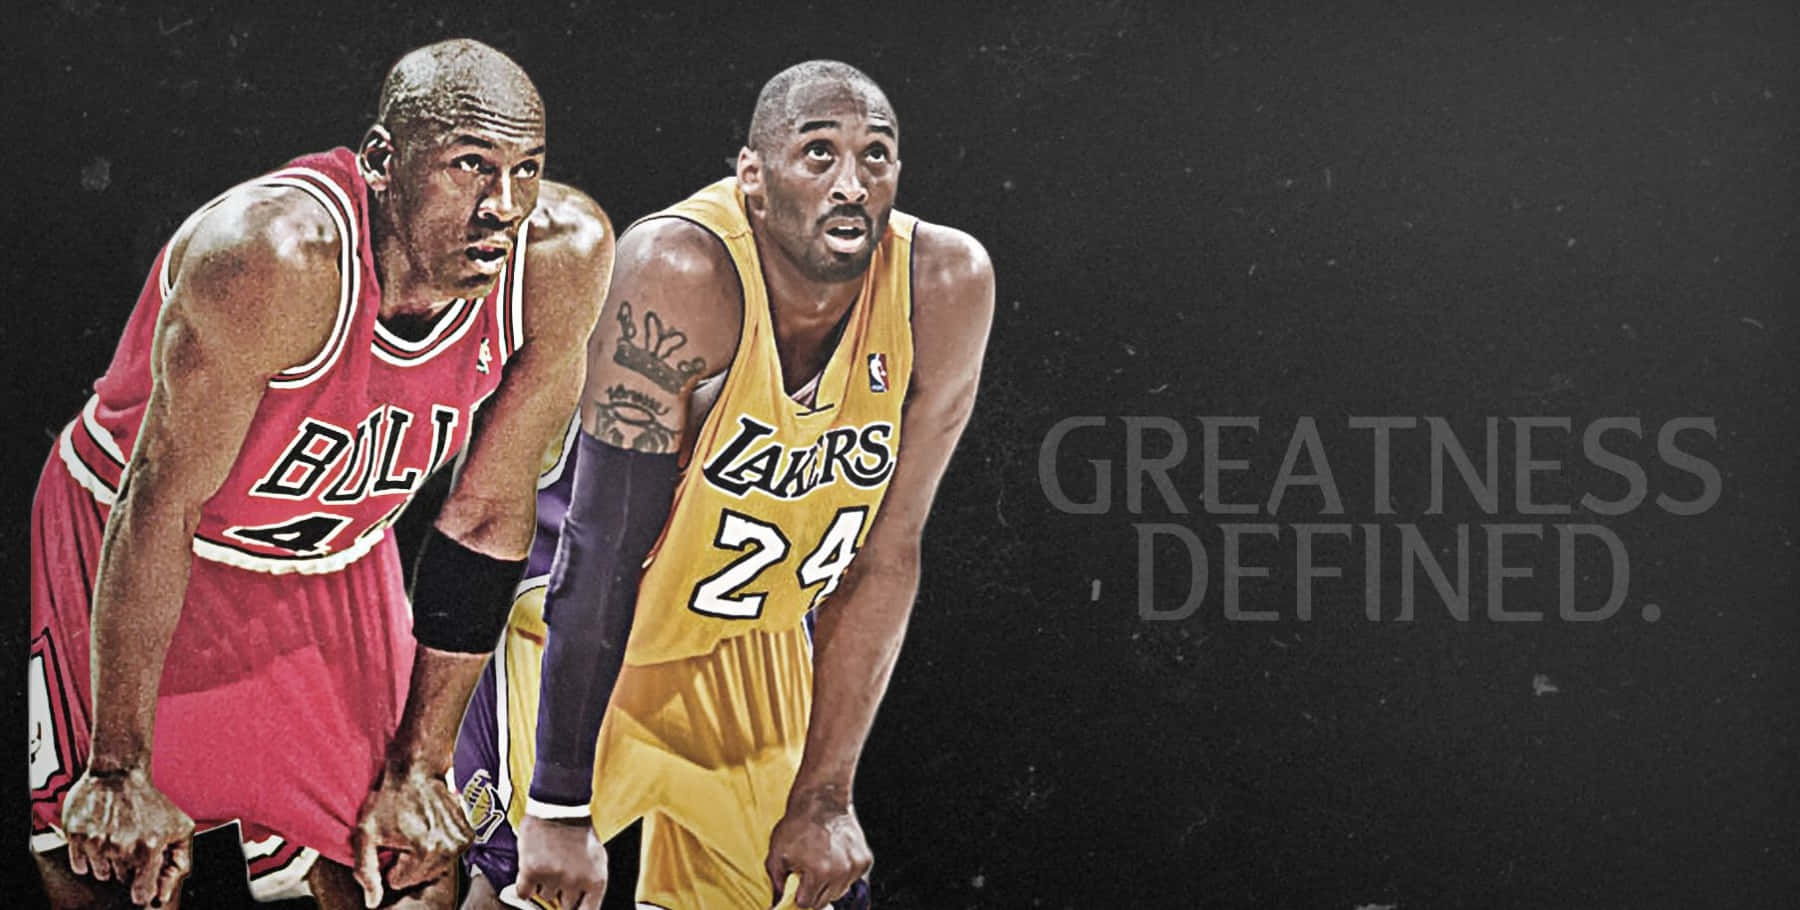 Denne tapet har to af de største atleter gennem tiden, Kobe Bryant og Michael Jordan. Wallpaper